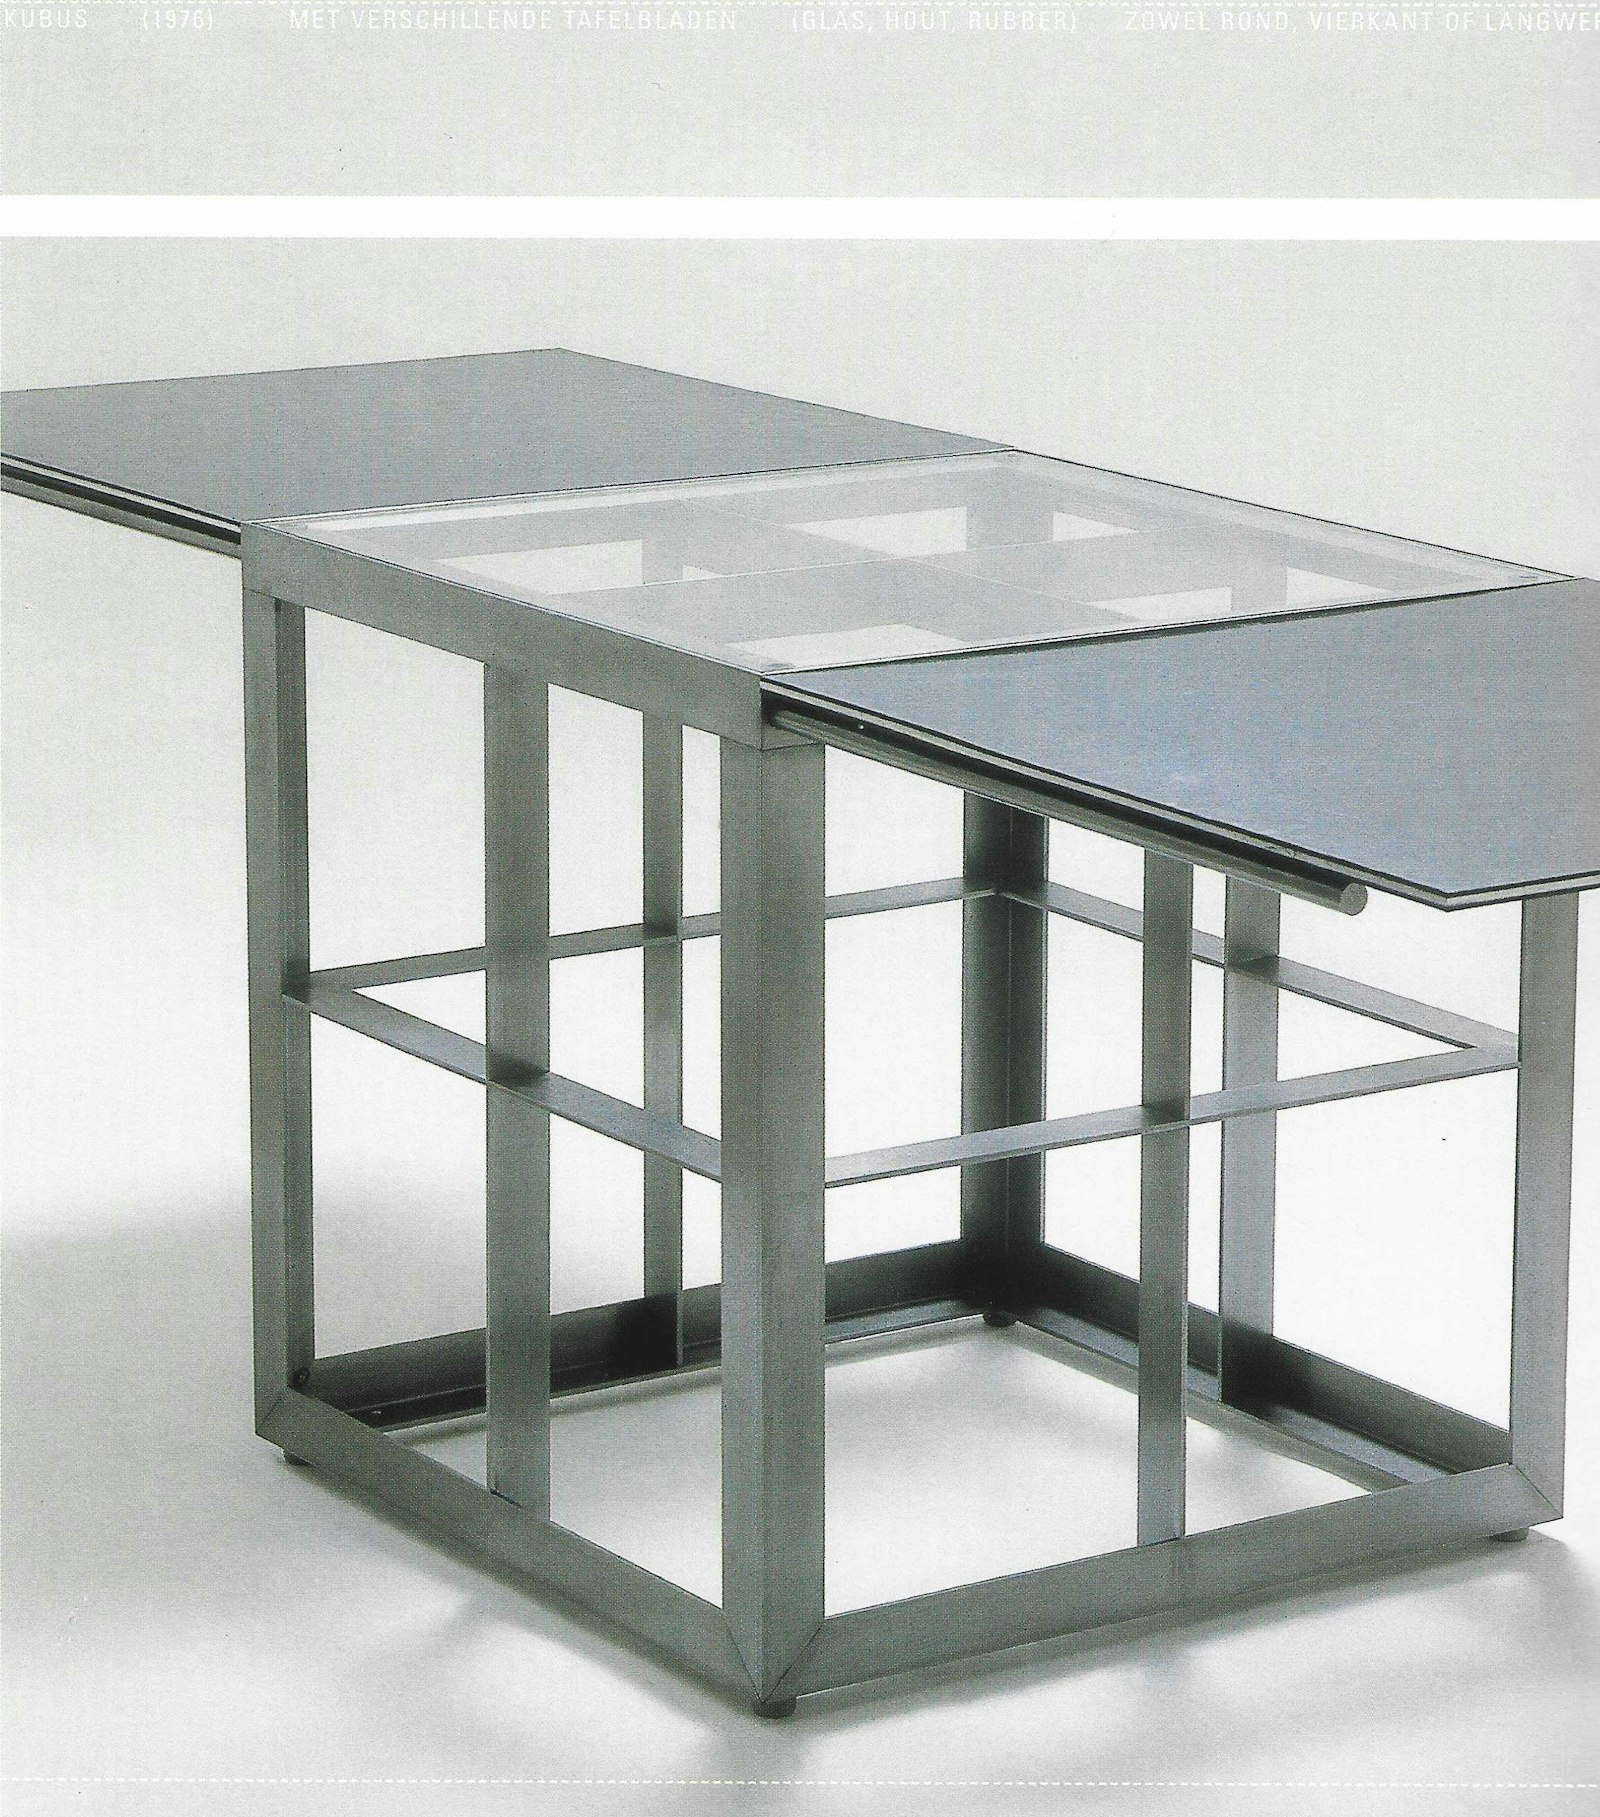 'Kubus' (1976) met verschillende tafelbladen (glas, hout, rubber), zowel rond, vierkant of langwerpig